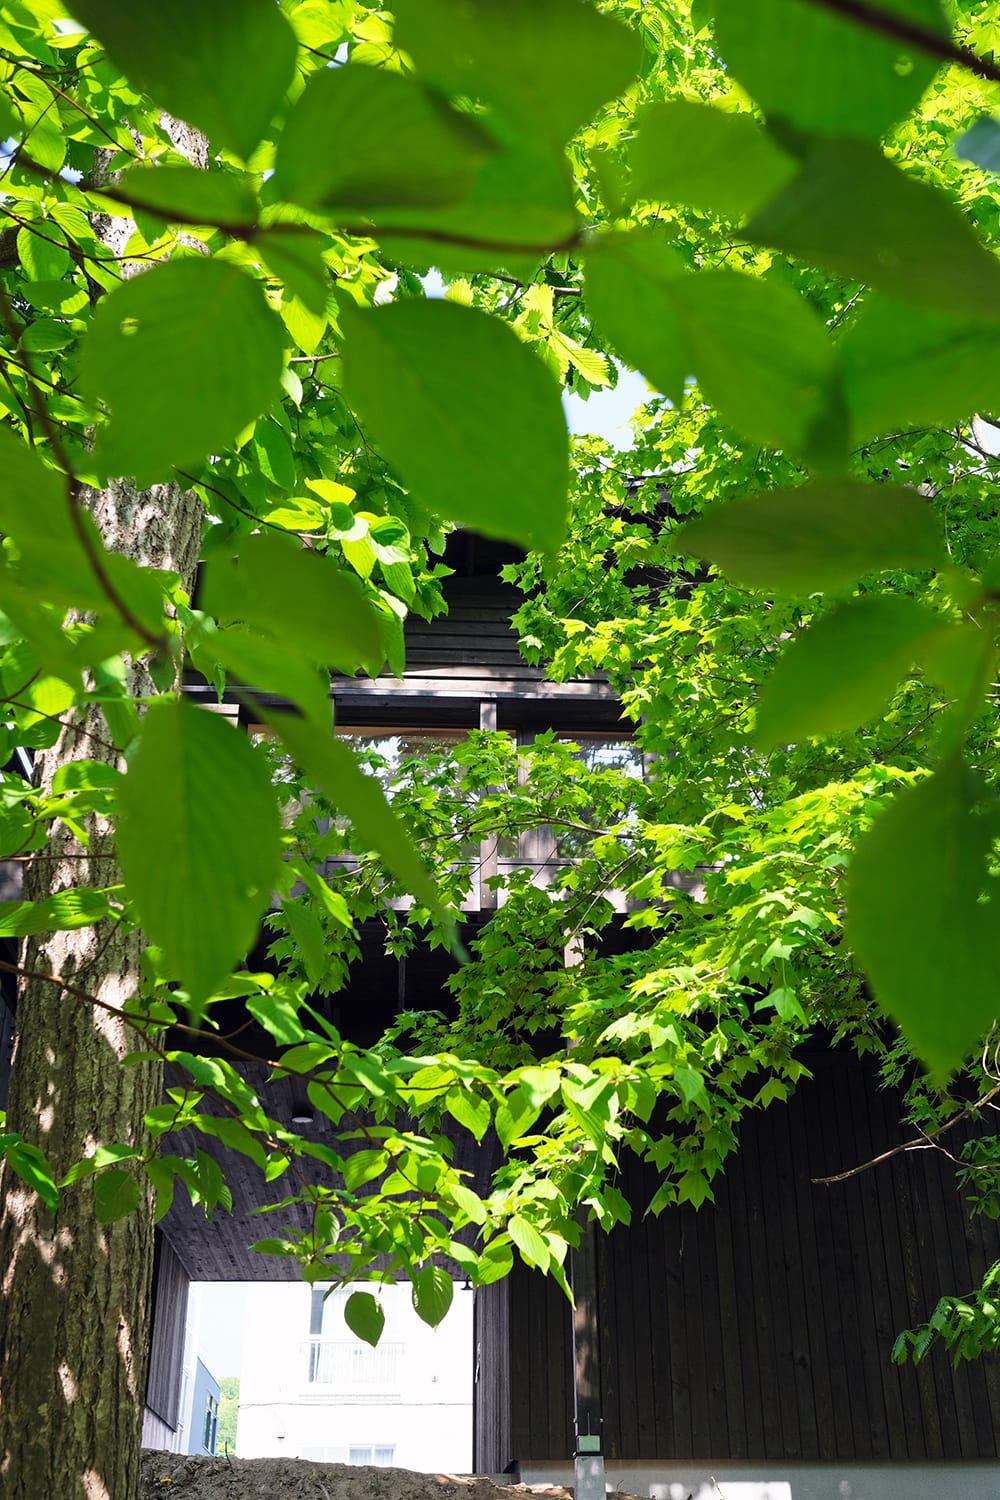 ミズナラ・イタヤカエデ・ミズキの樹々をまとう札幌の森の家